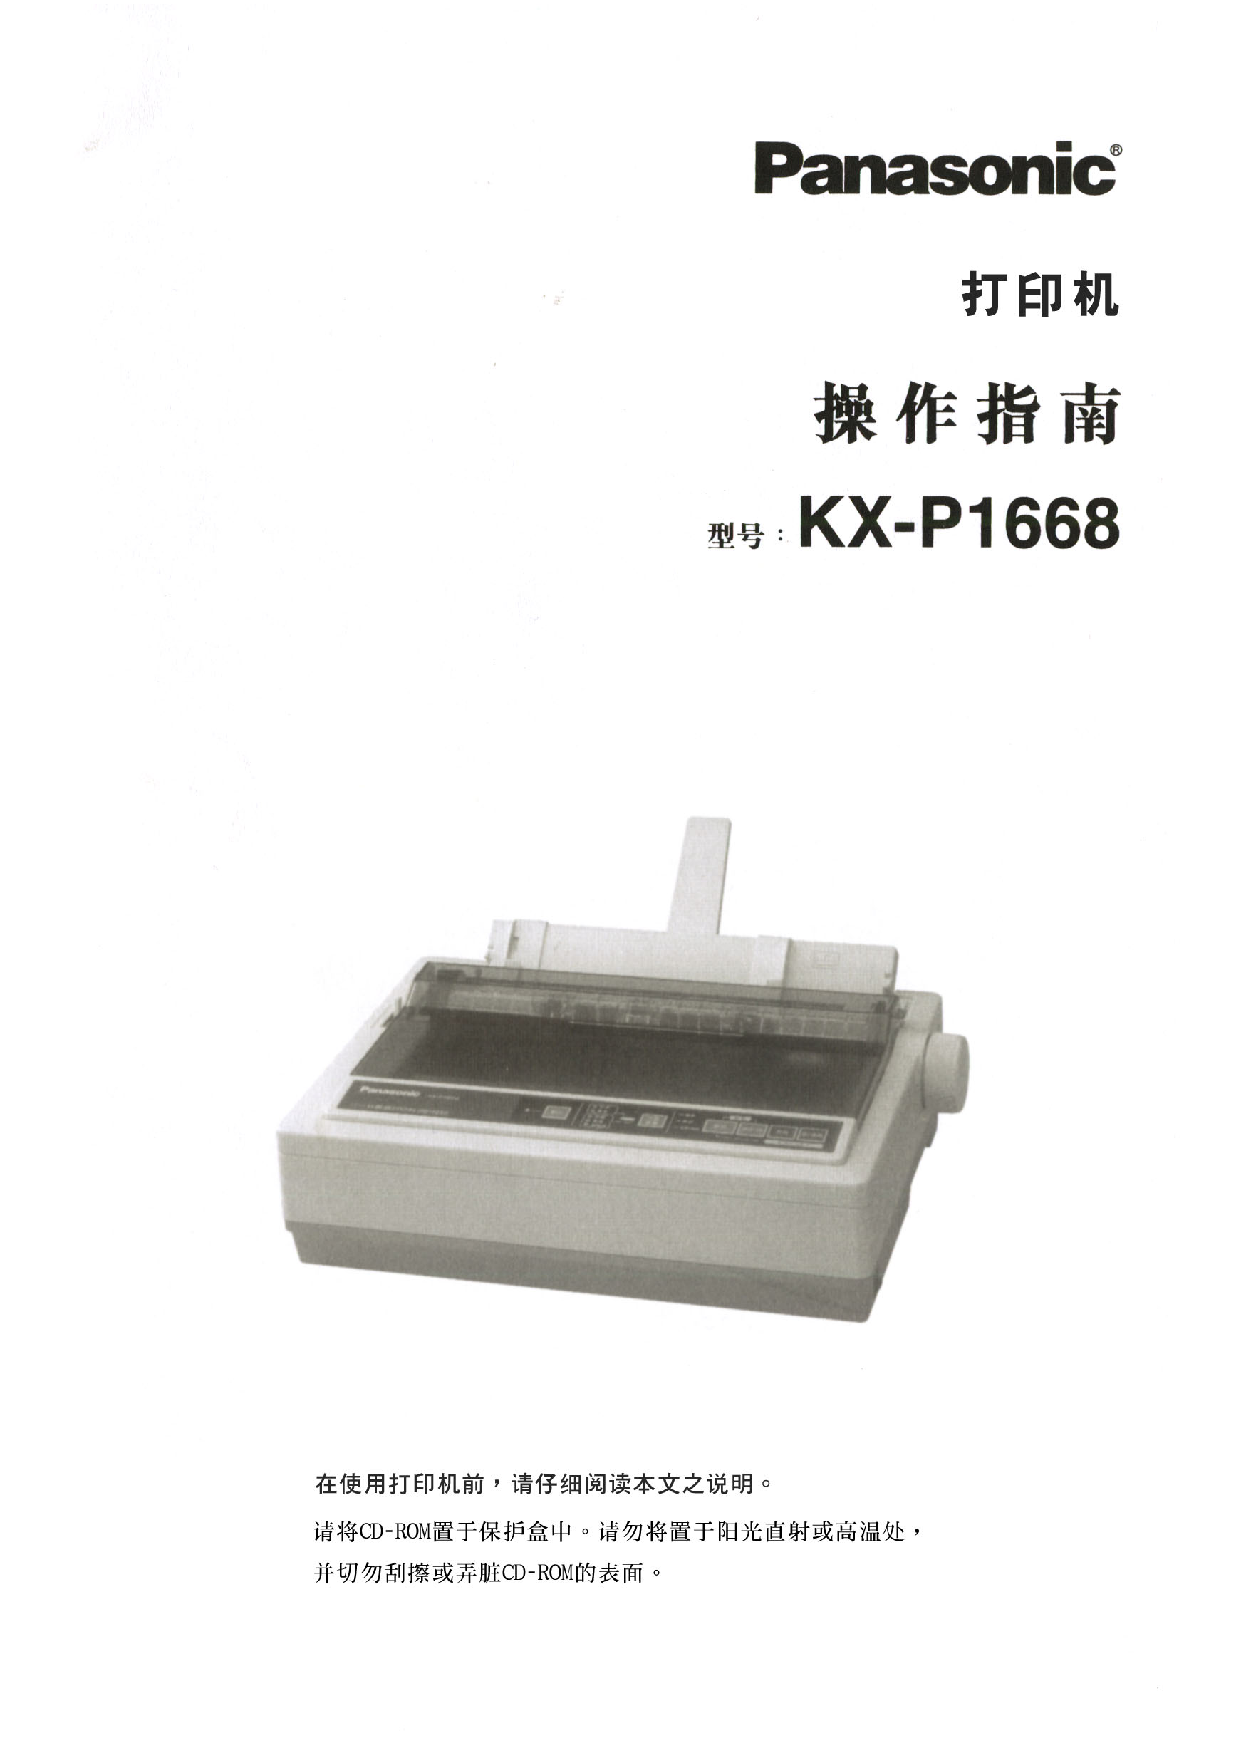 松下 Panasonic KX-P1668 操作指南 封面